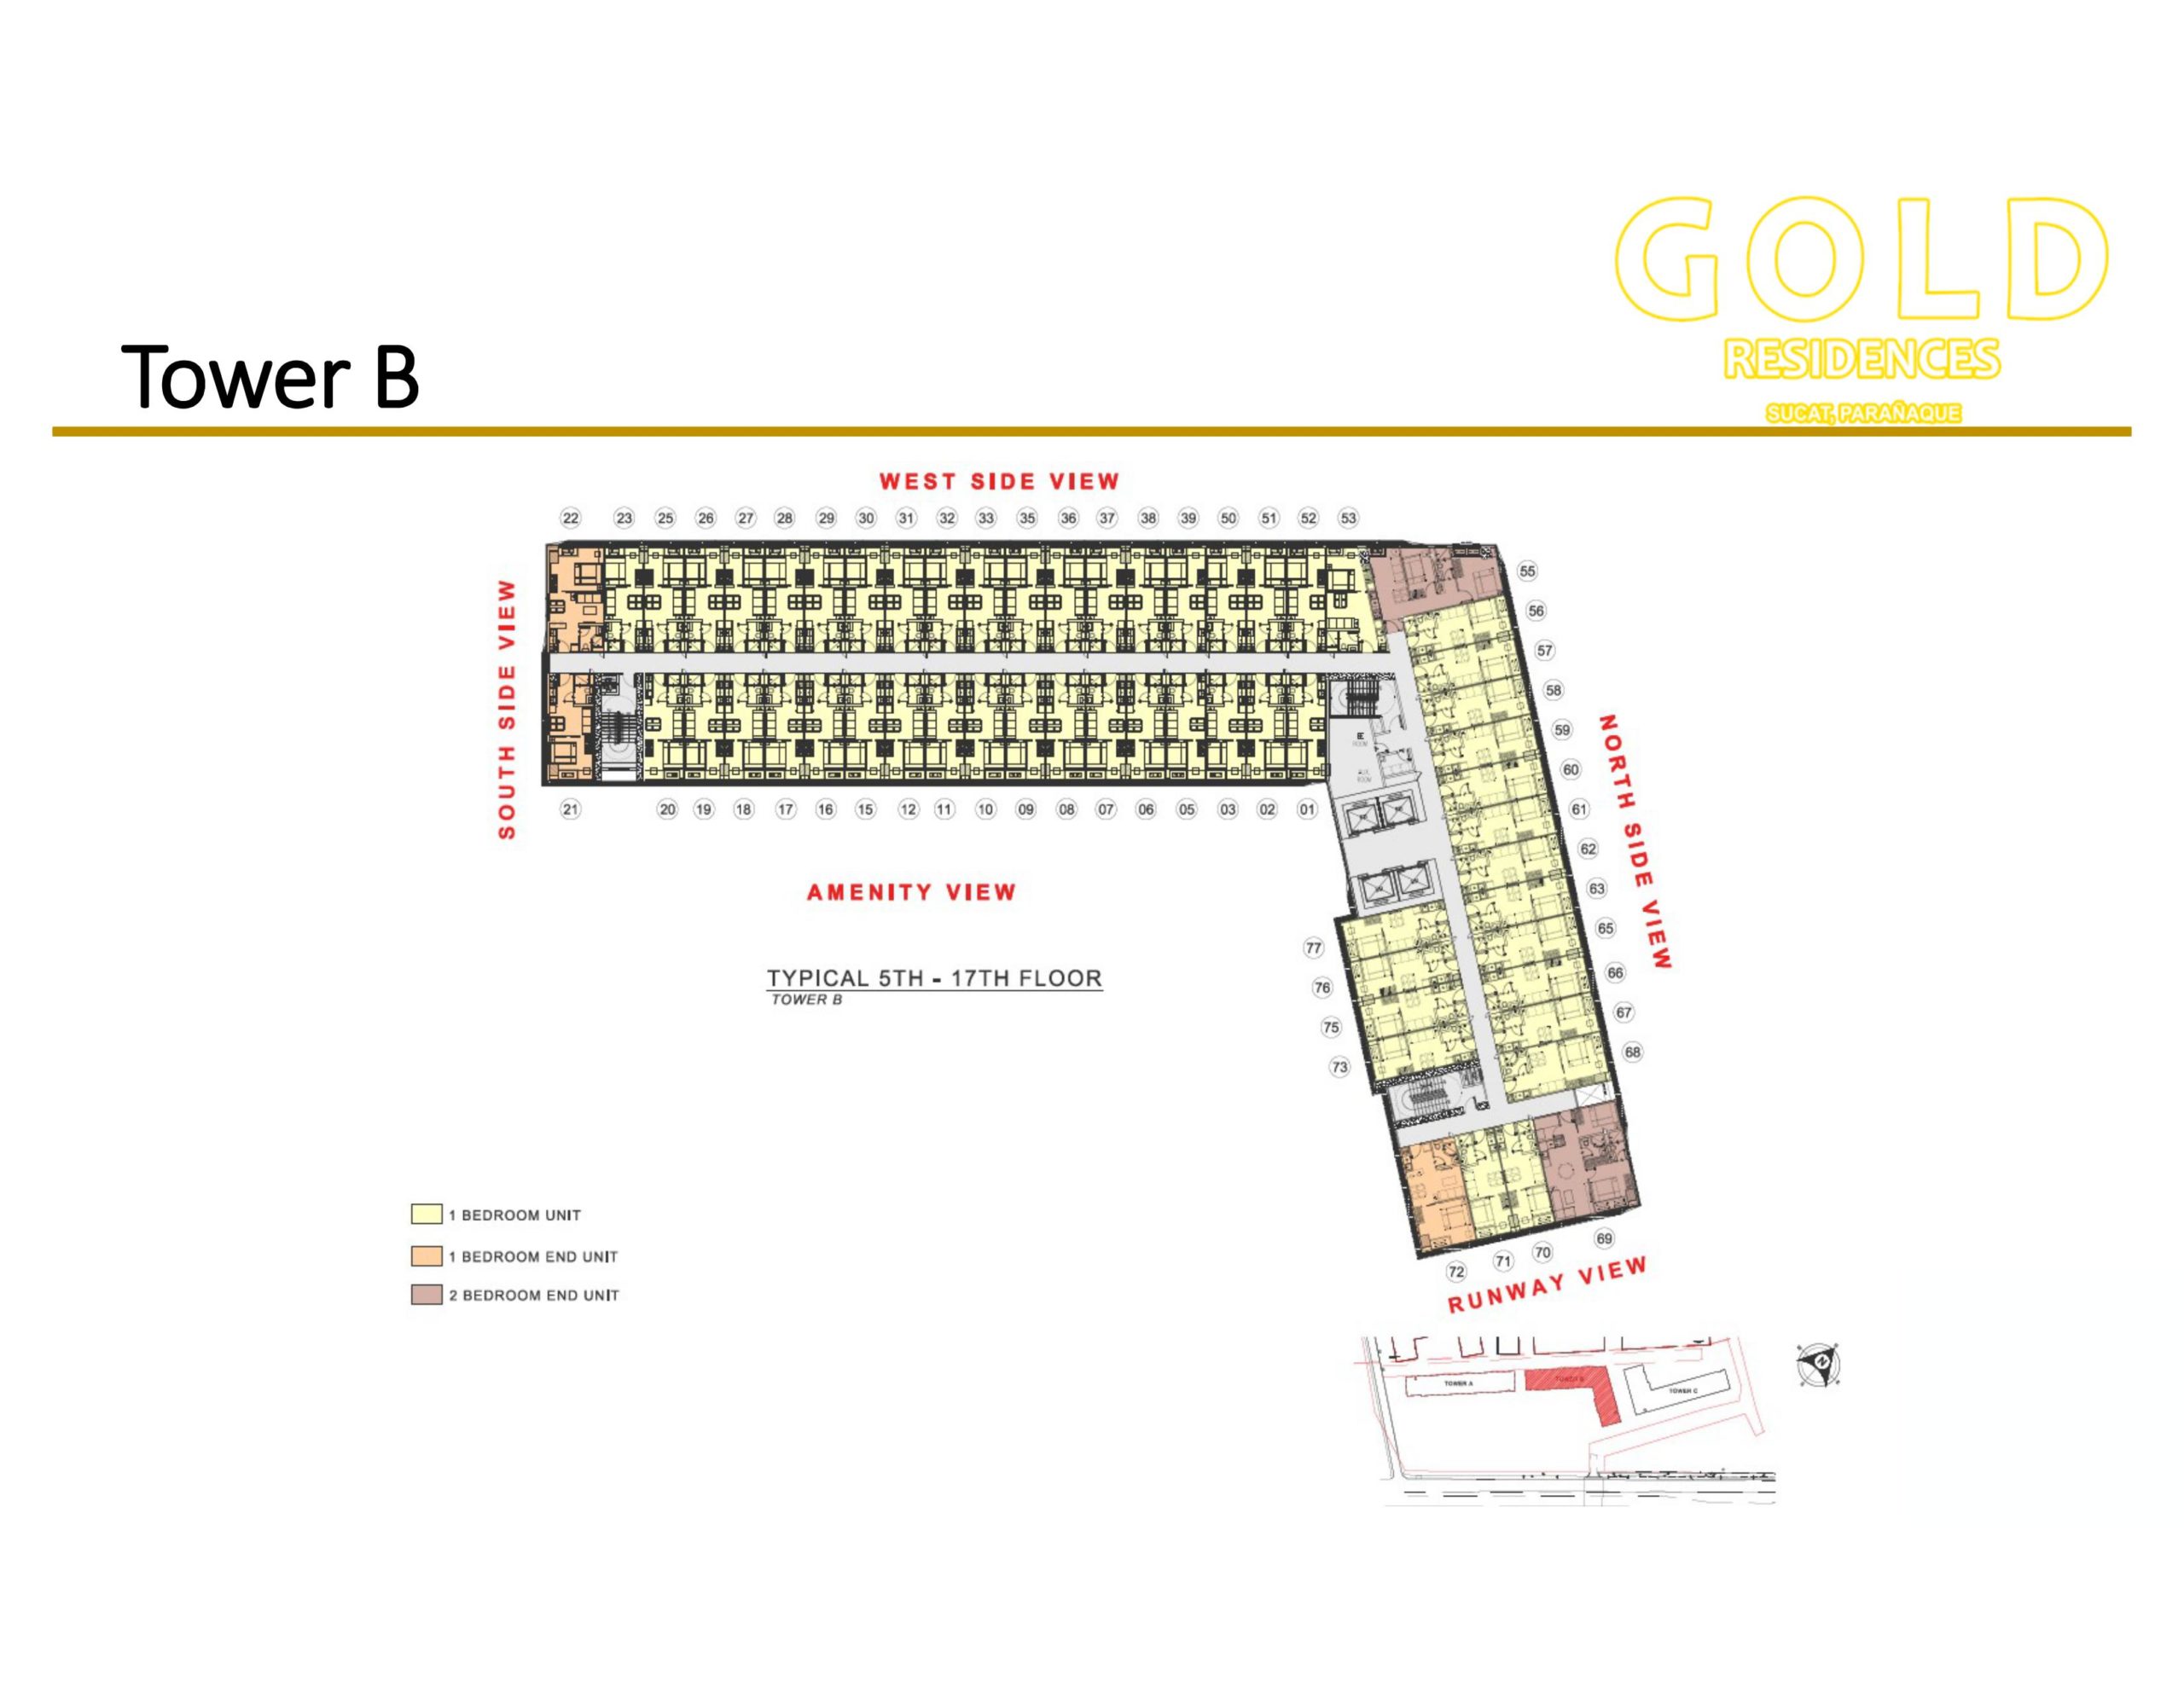 Gold Residences Floorplan - Tower B